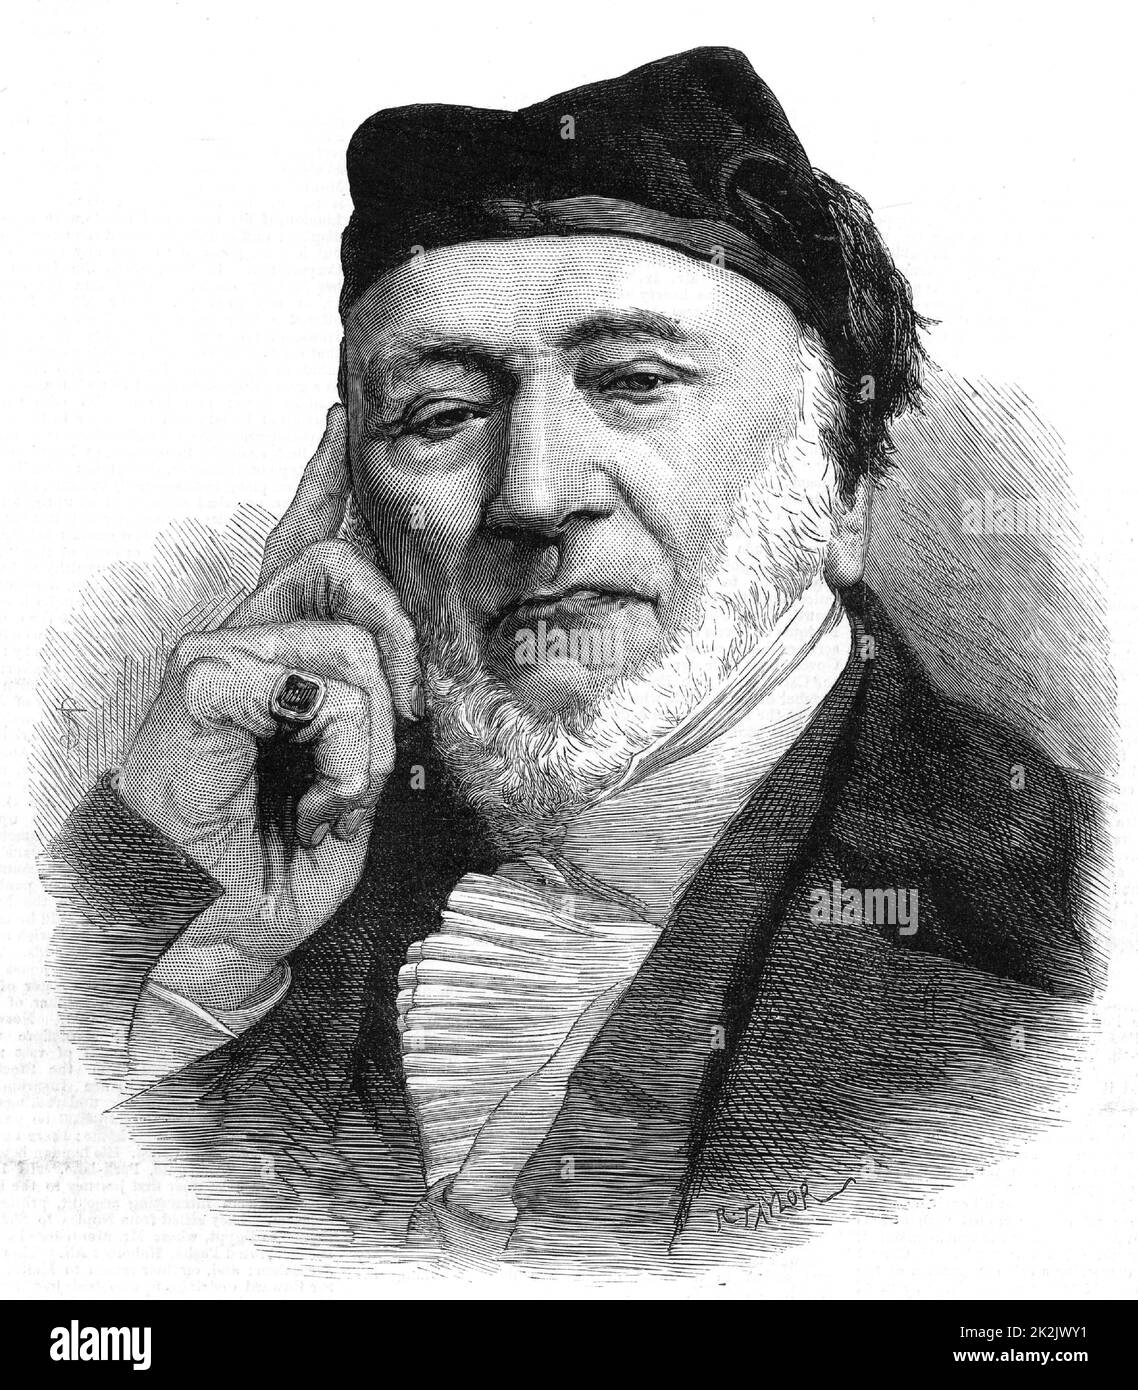 Mosè Montefiore (1784-1885) italiano-inglese nato filantropo e attivista per i diritti di ebrei. Da 'l'Illustrated London News' (Londra, 3 novembre 1883). Incisione. Foto Stock